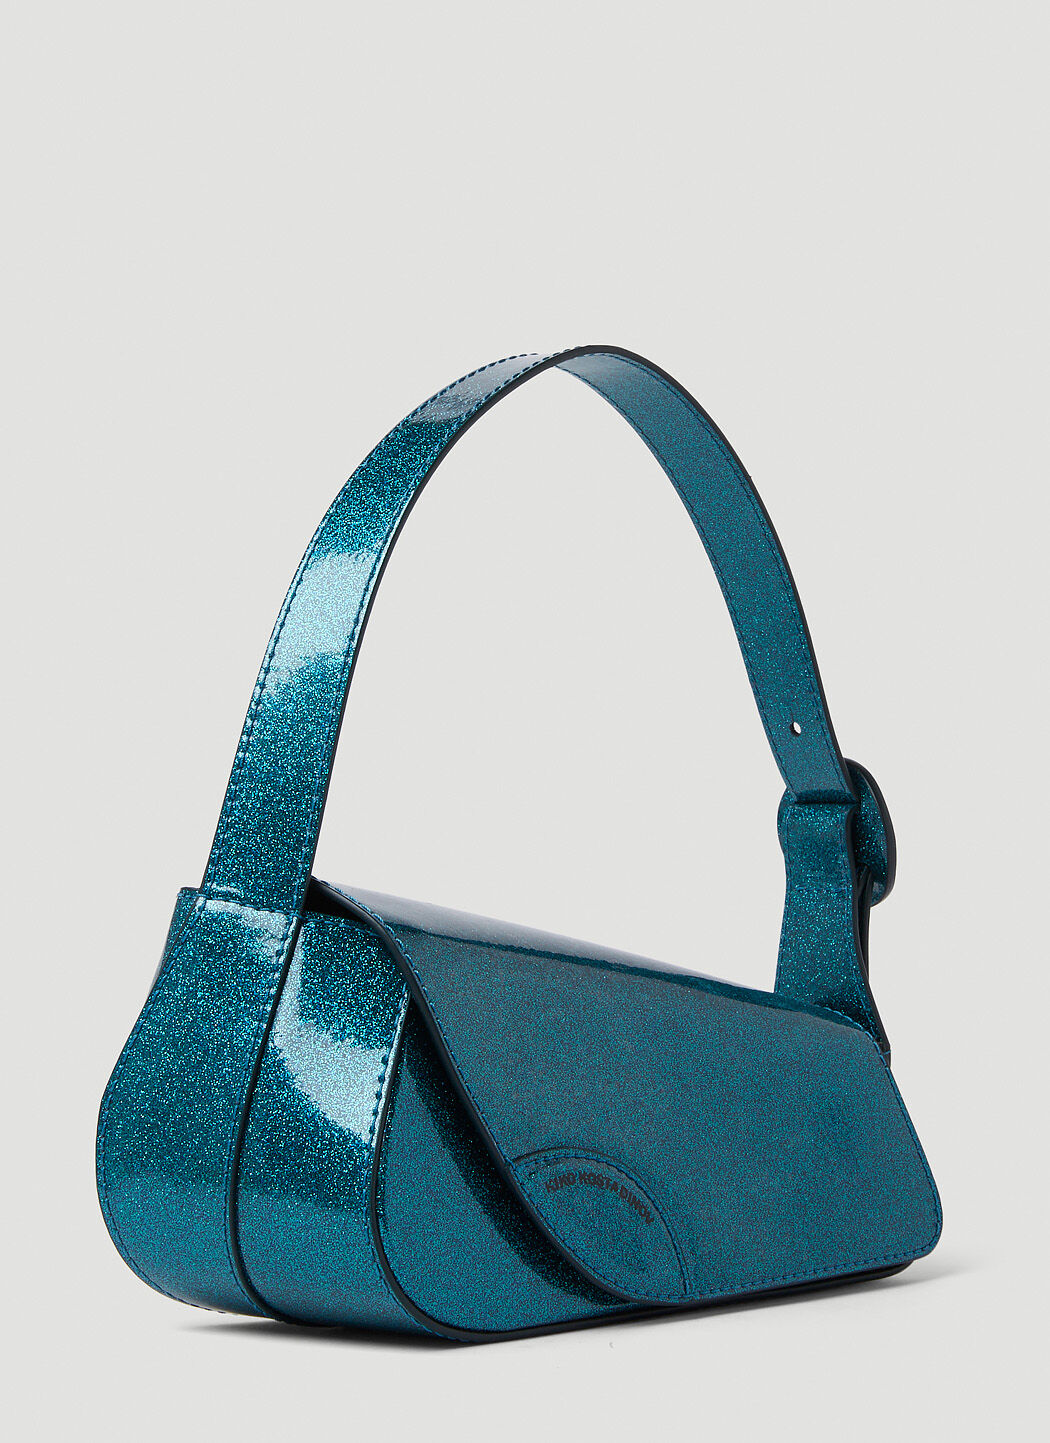 Kiko Kostadinov Trivia Shoulder Bag in Blue | LN-CC